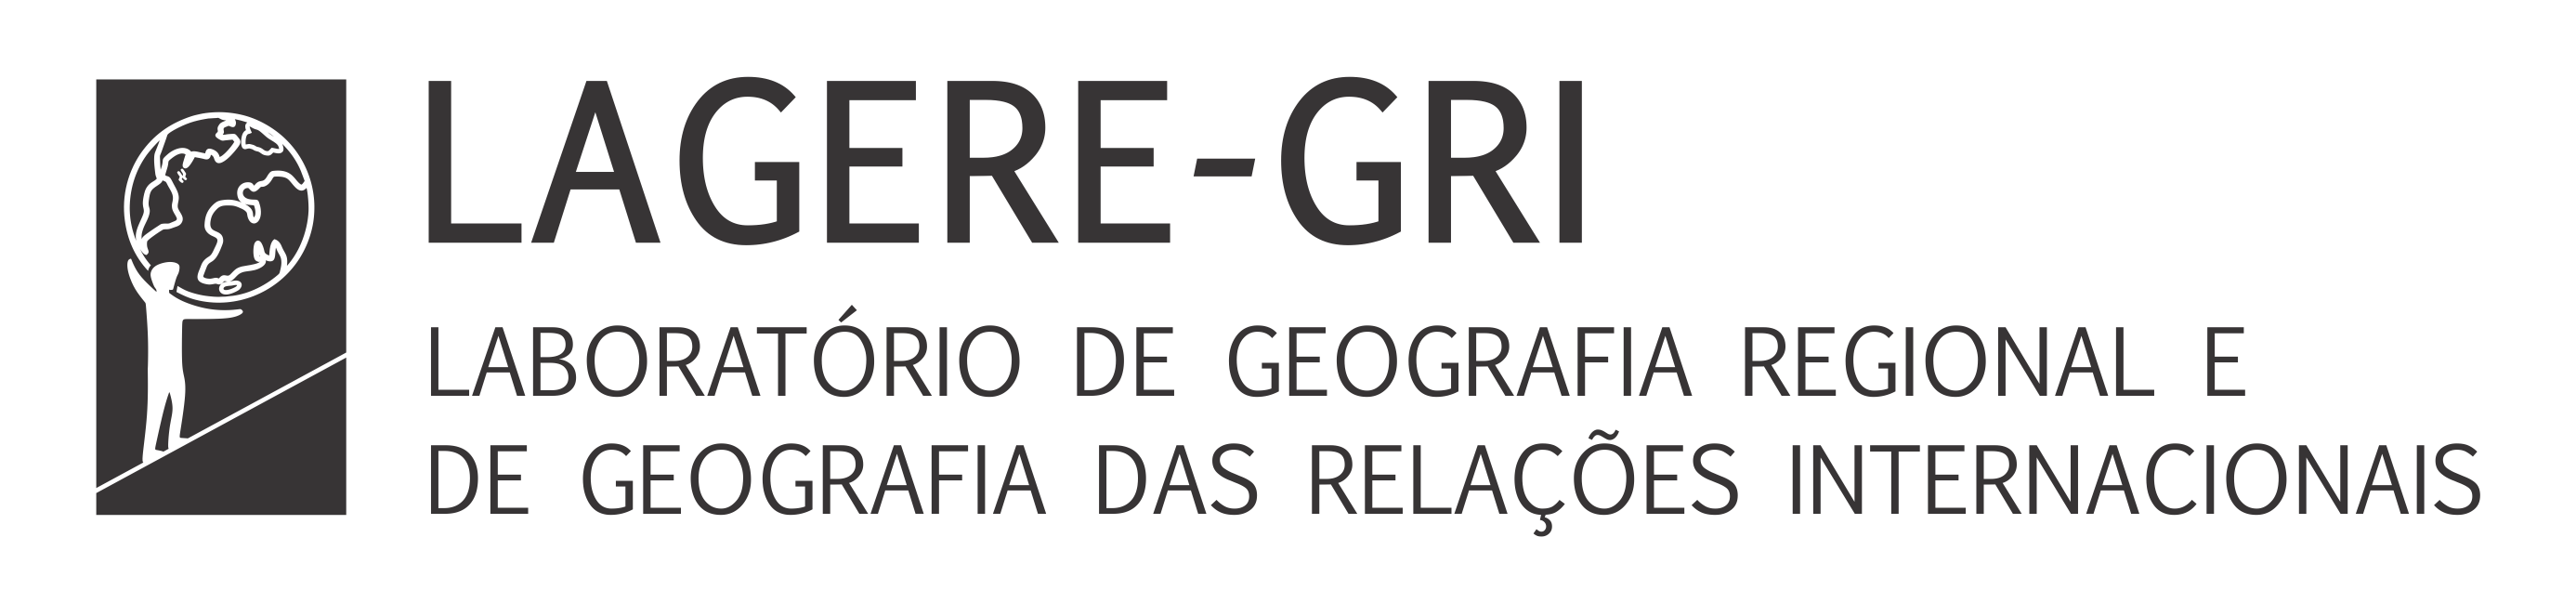 Laboratório de Geografia Regional e de Geografia das Relações Internacionais